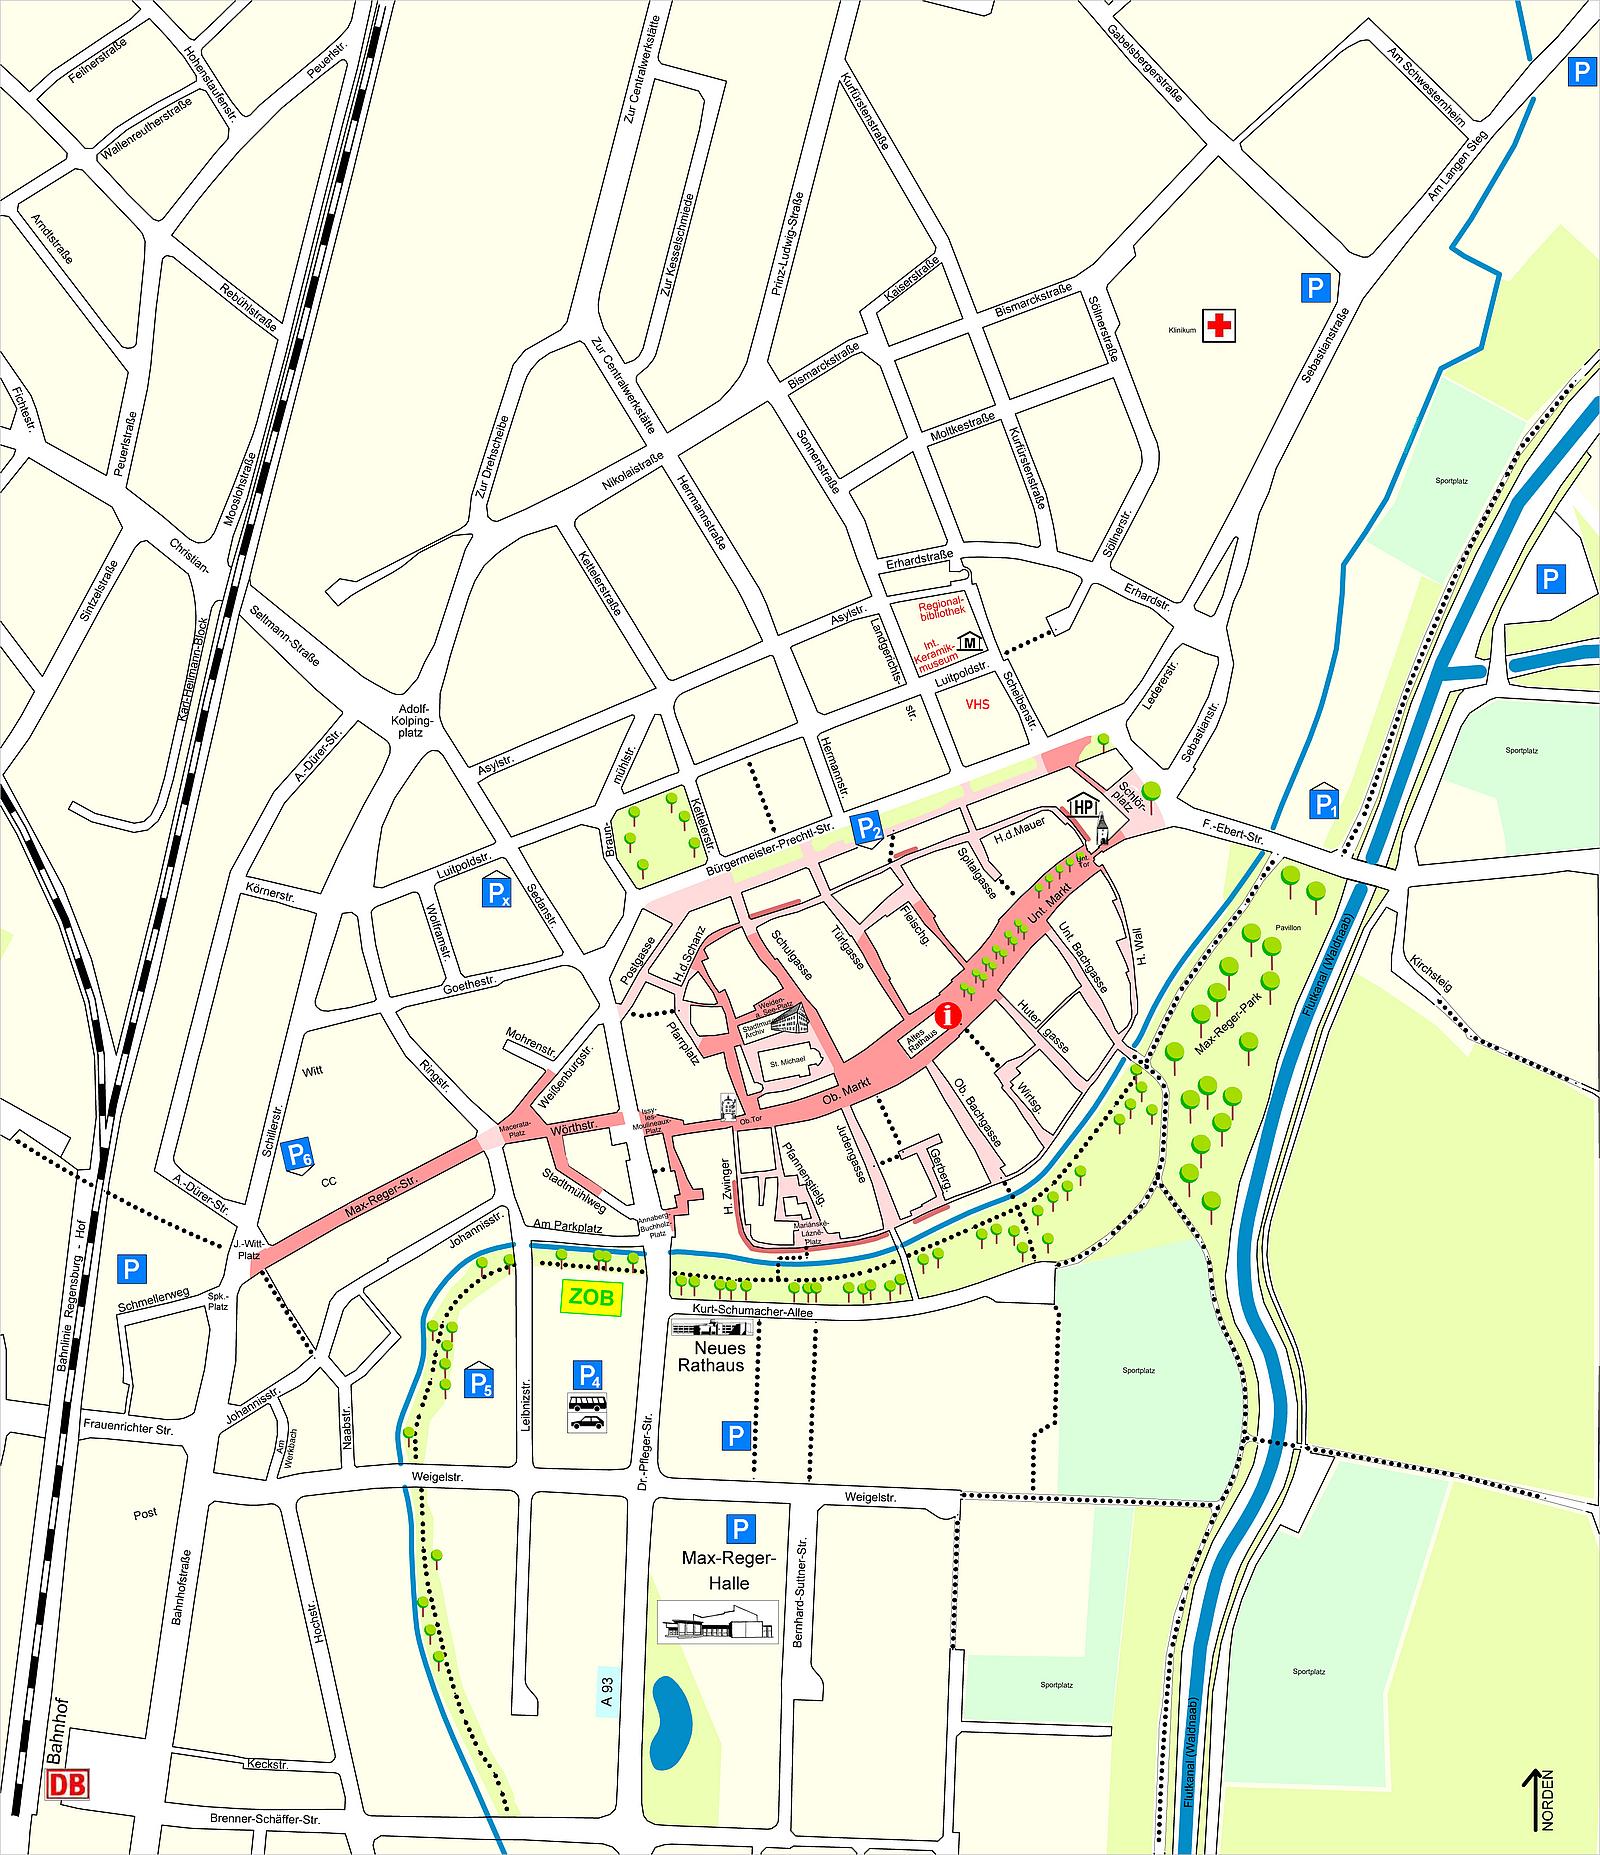 Plan mit den Parkmöglichkeiten in der Innenstadt